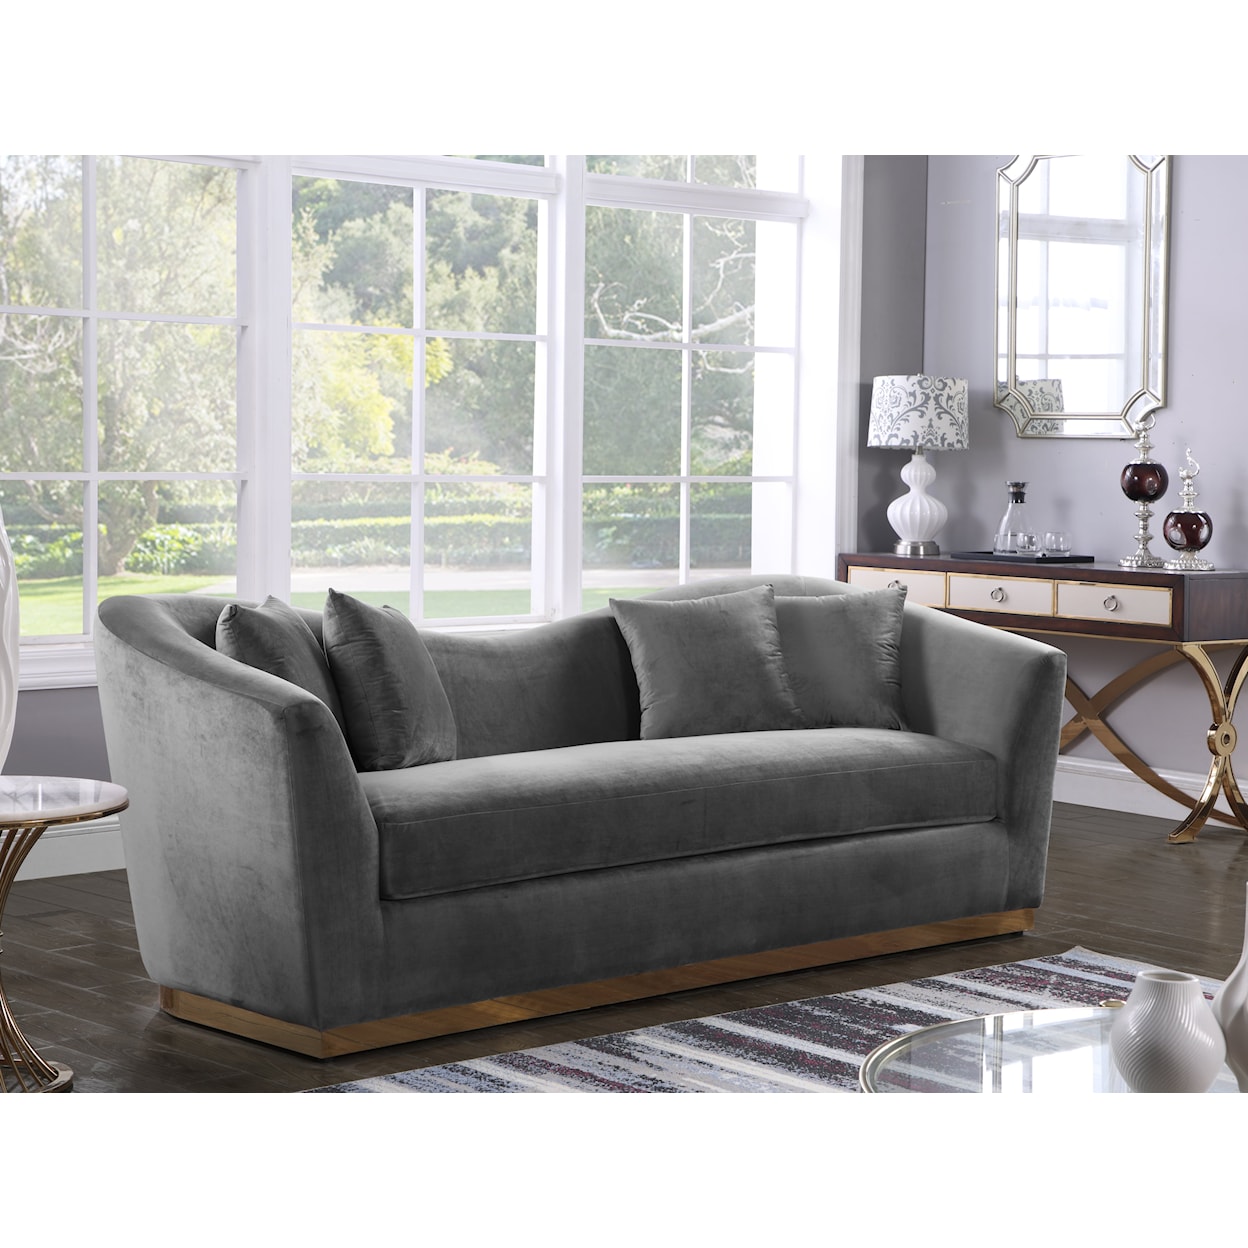 Meridian Furniture Arabella Sofa